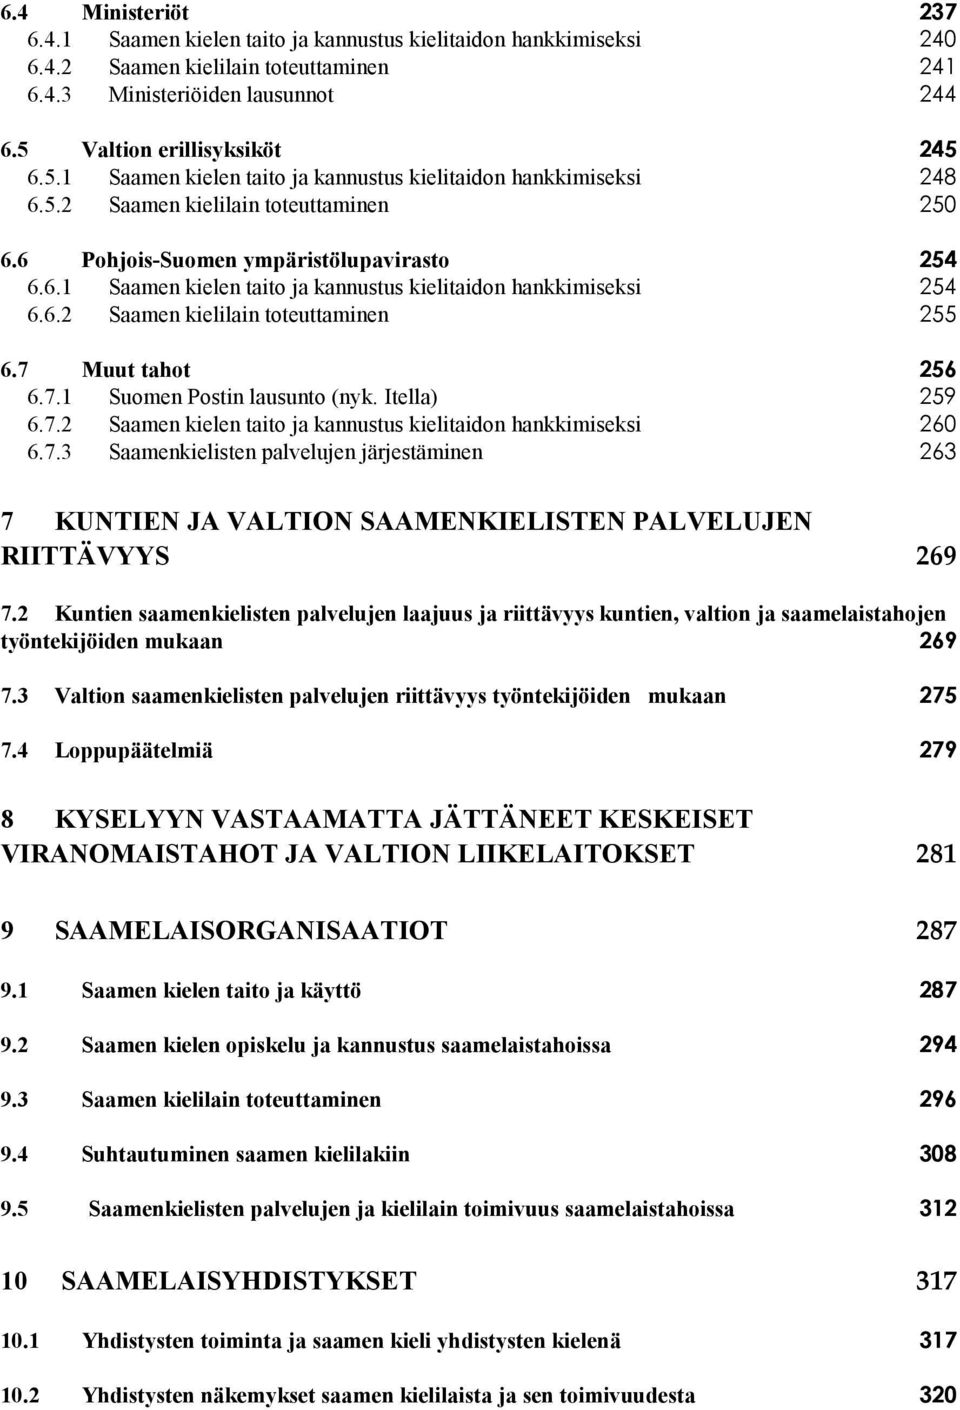 6.2 Saamen kielilain toteuttaminen 255 6.7 Muut tahot 256 6.7.1 Suomen Postin lausunto (nyk. Itella) 259 6.7.2 Saamen kielen taito ja kannustus kielitaidon hankkimiseksi 260 6.7.3 Saamenkielisten palvelujen järjestäminen 263 7 KUNTIEN JA VALTION SAAMENKIELISTEN PALVELUJEN RIITTÄVYYS 269 7.